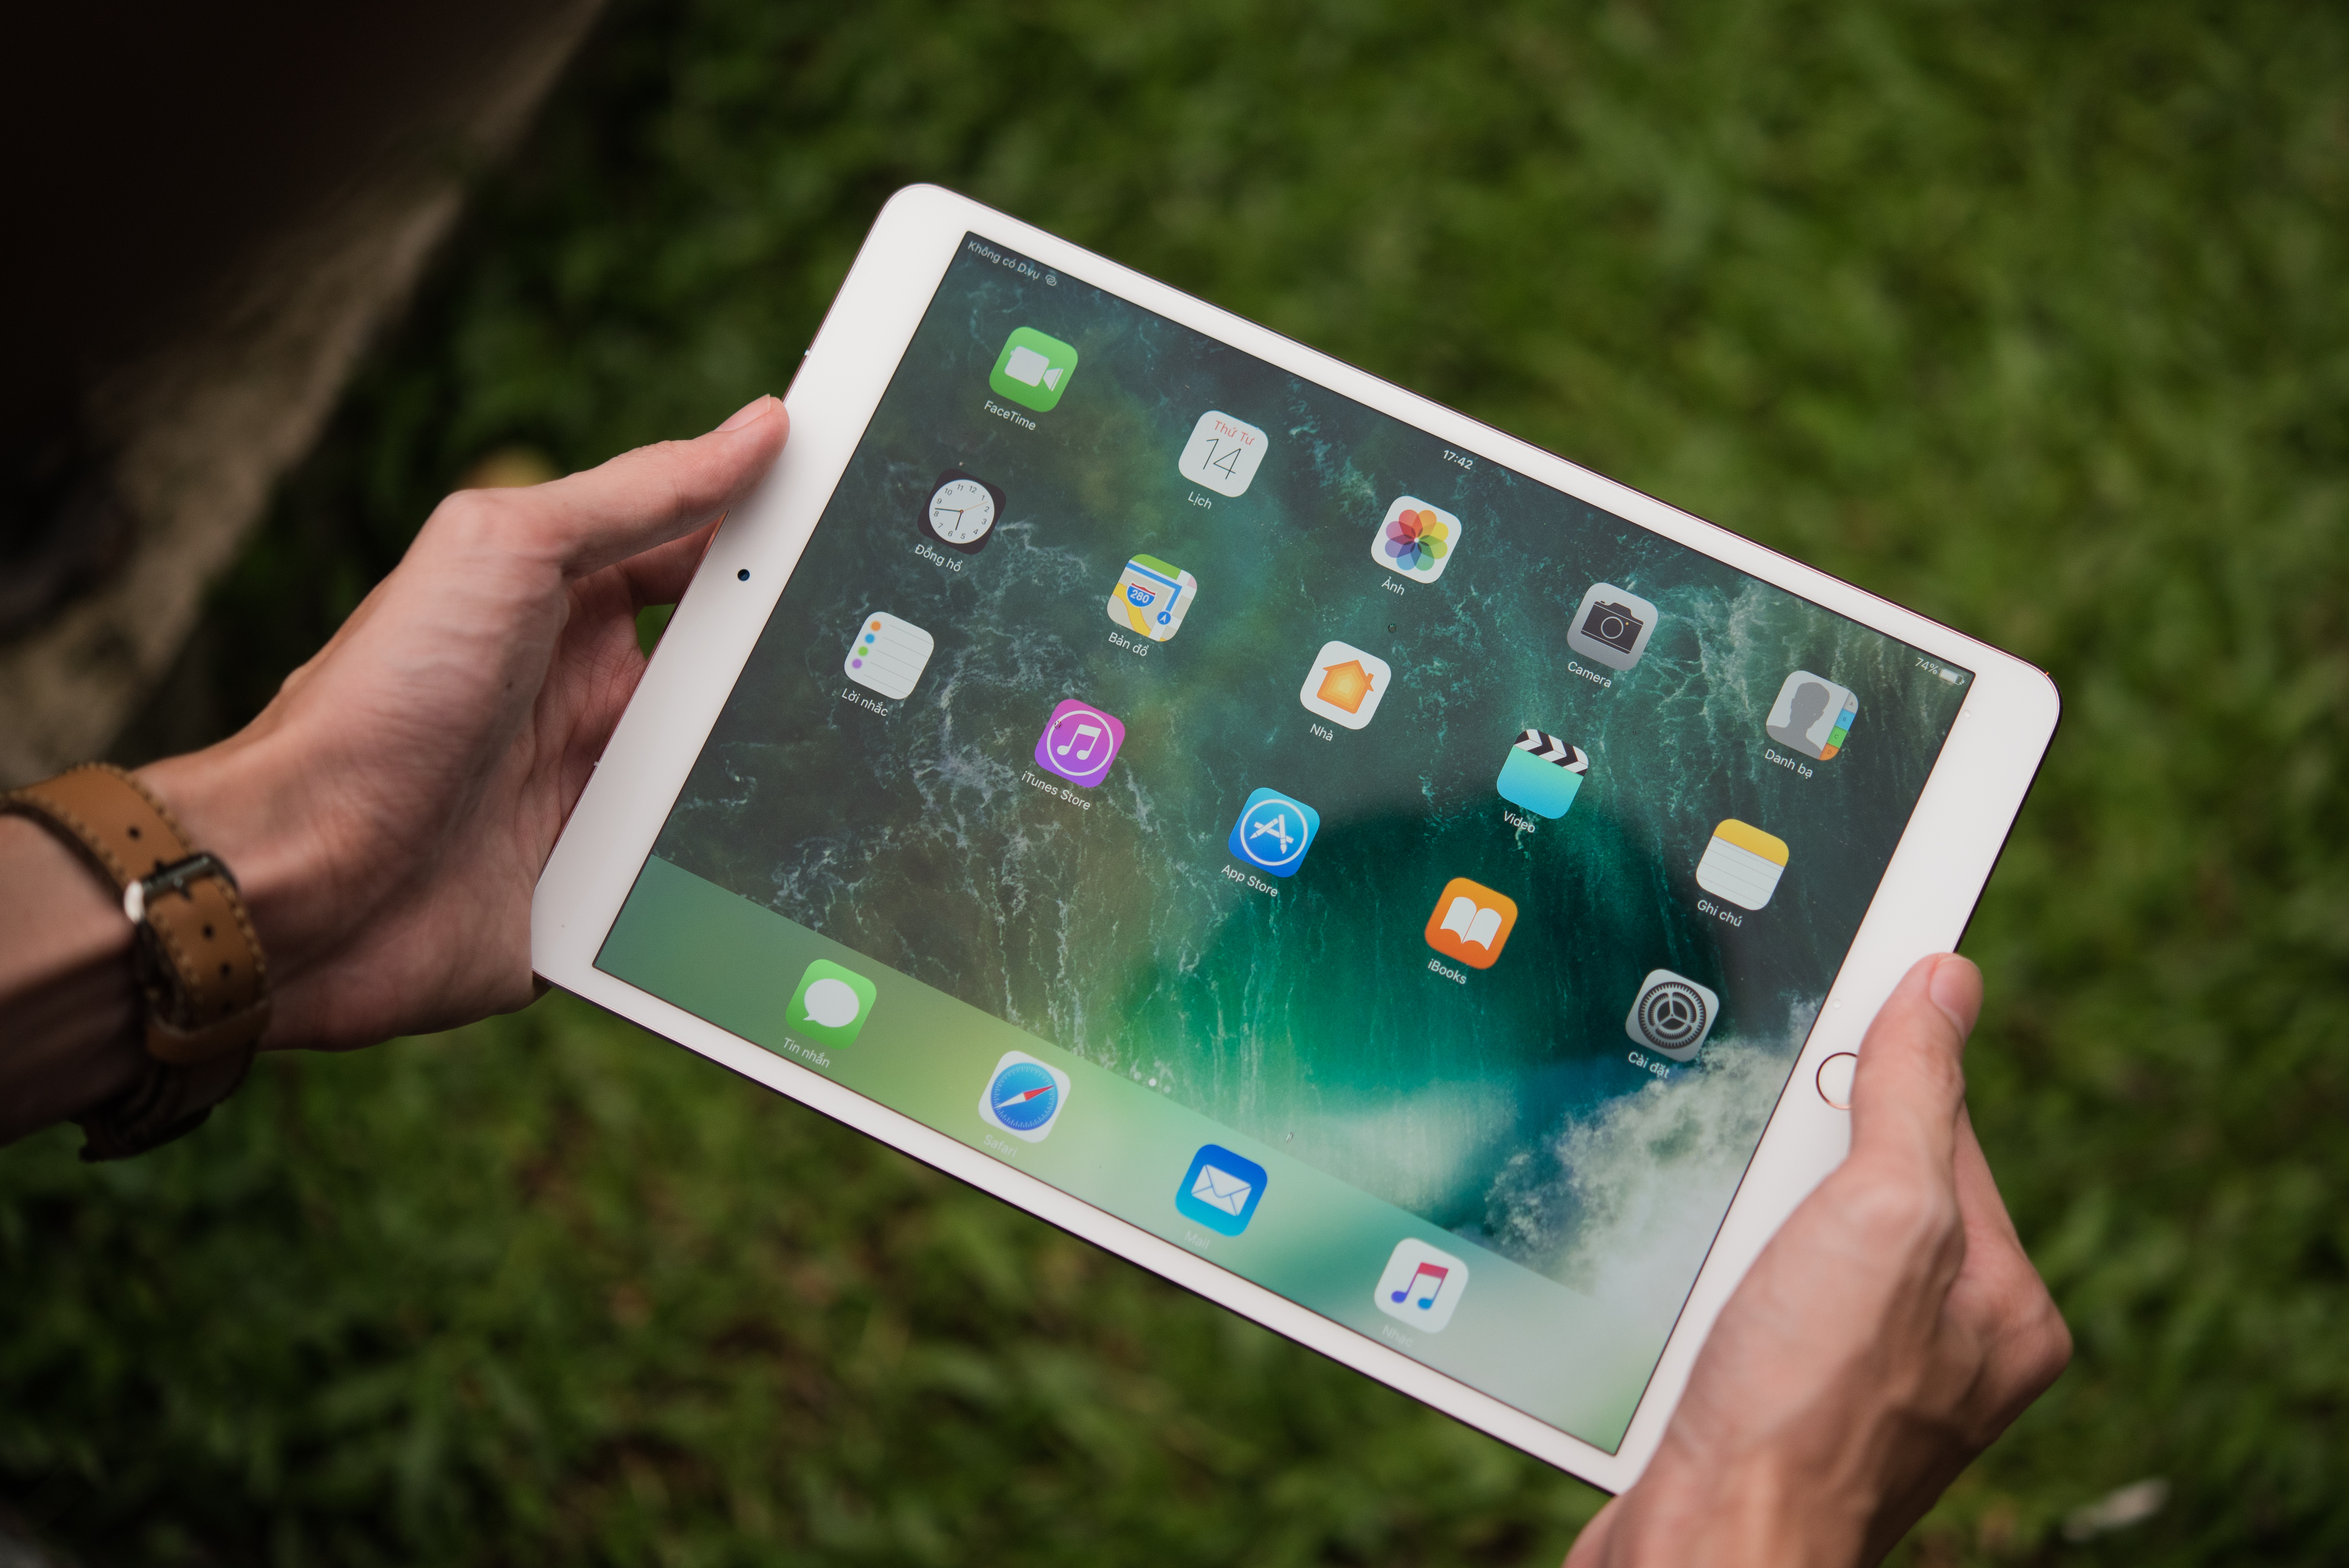 Uma fotografia mostra uma pessoa segurando um iPad pro. Existem widgets e aplicativos coloridos na tela.